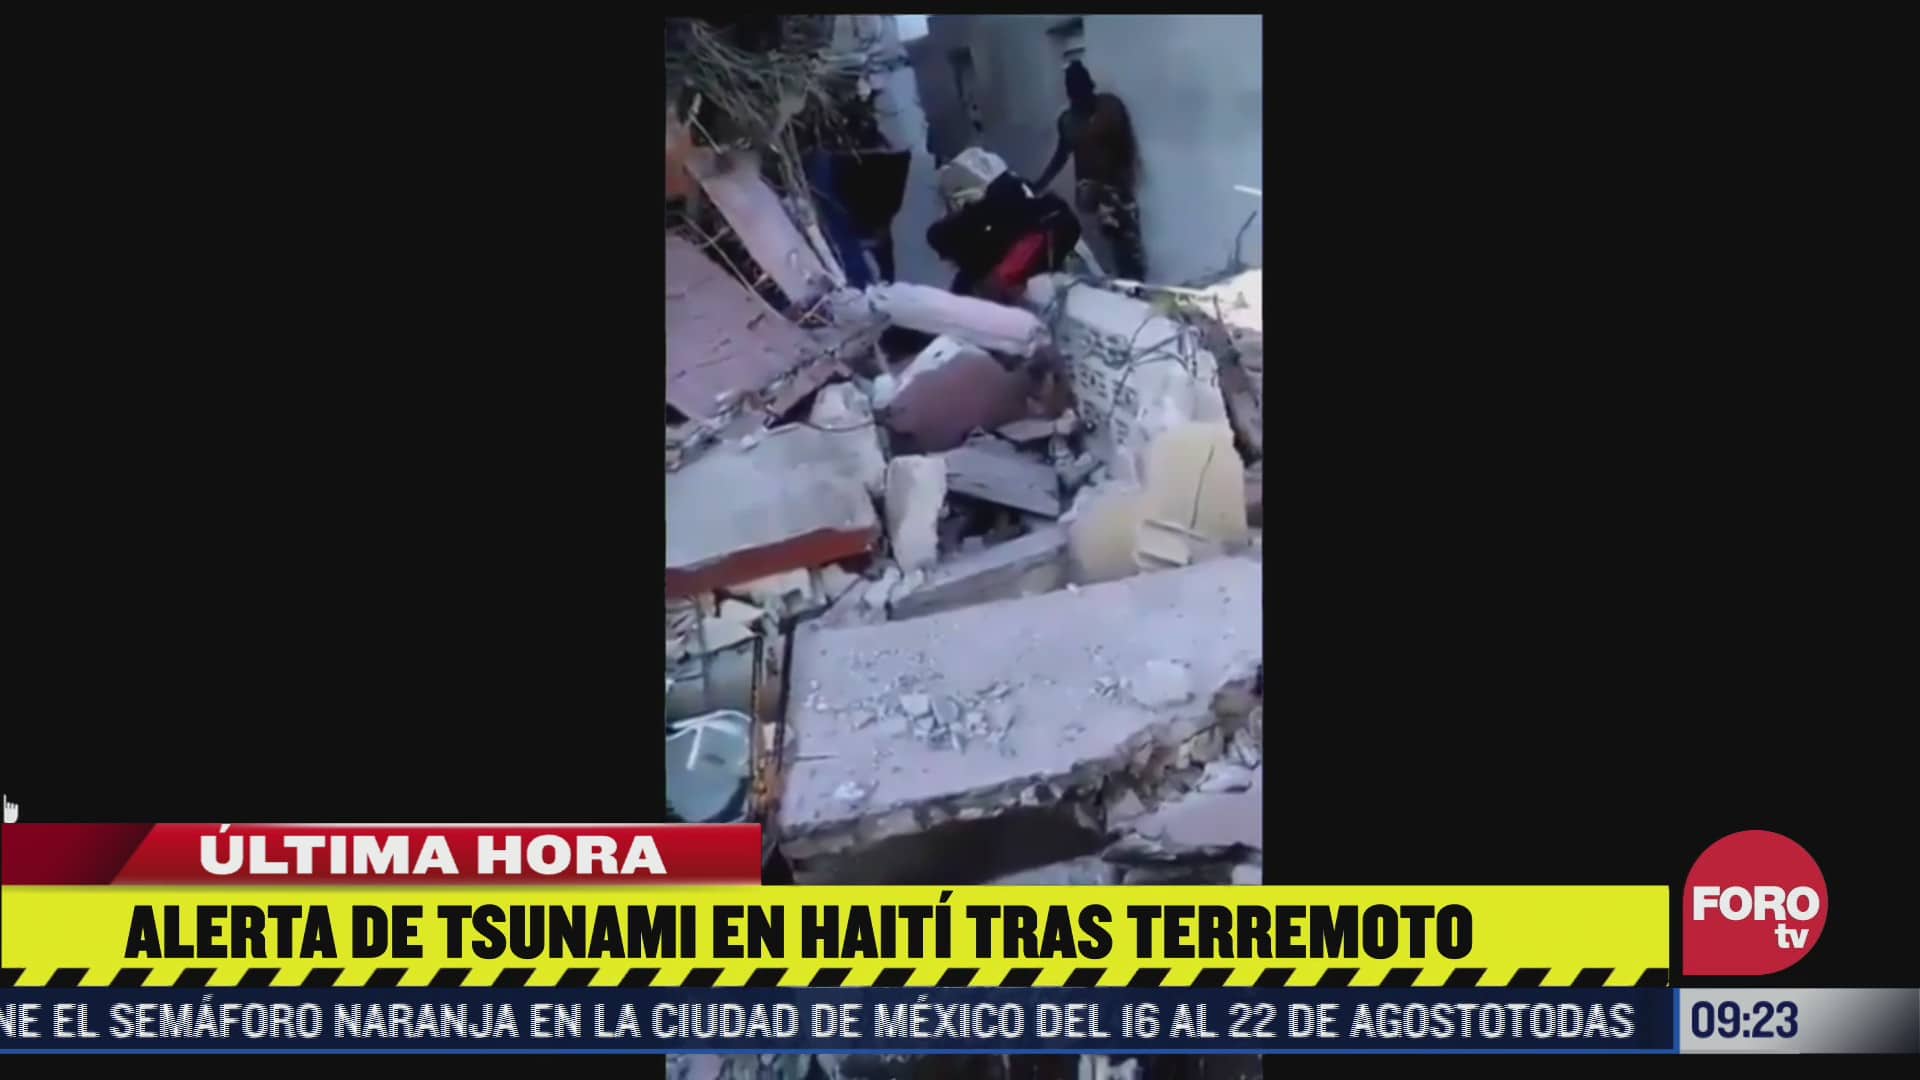 confirman que hay personas fallecidas por terremoto en haiti